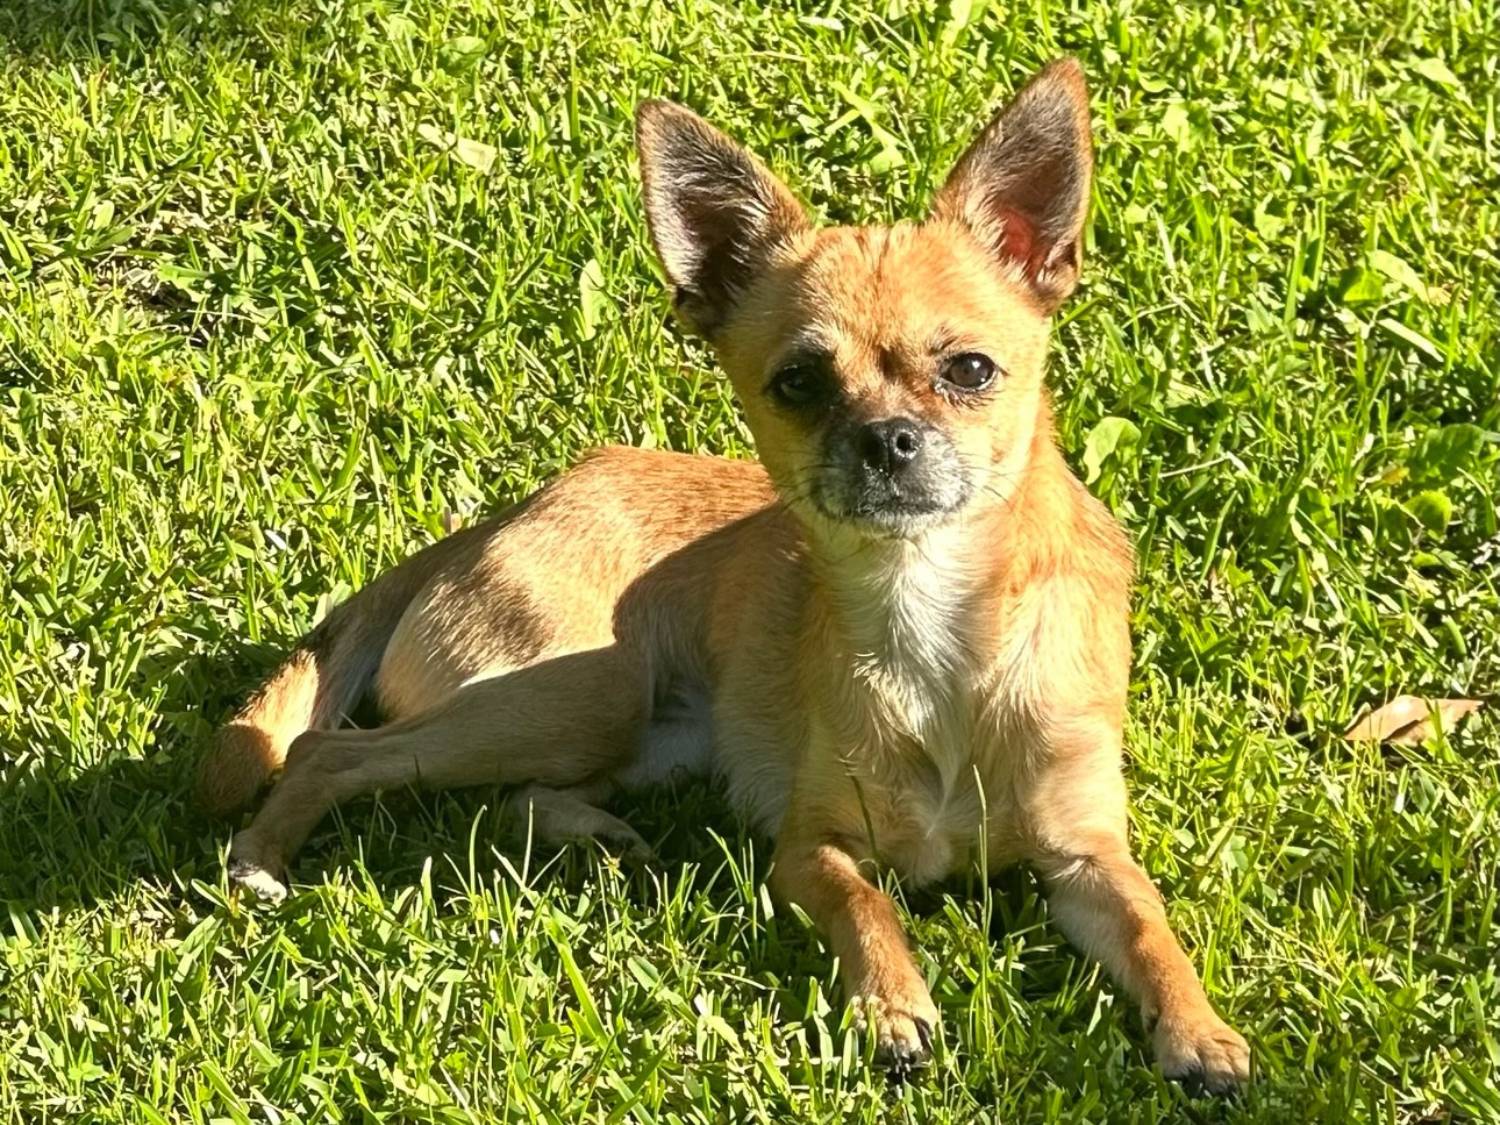 BFAR Girlfriend Chihuahua